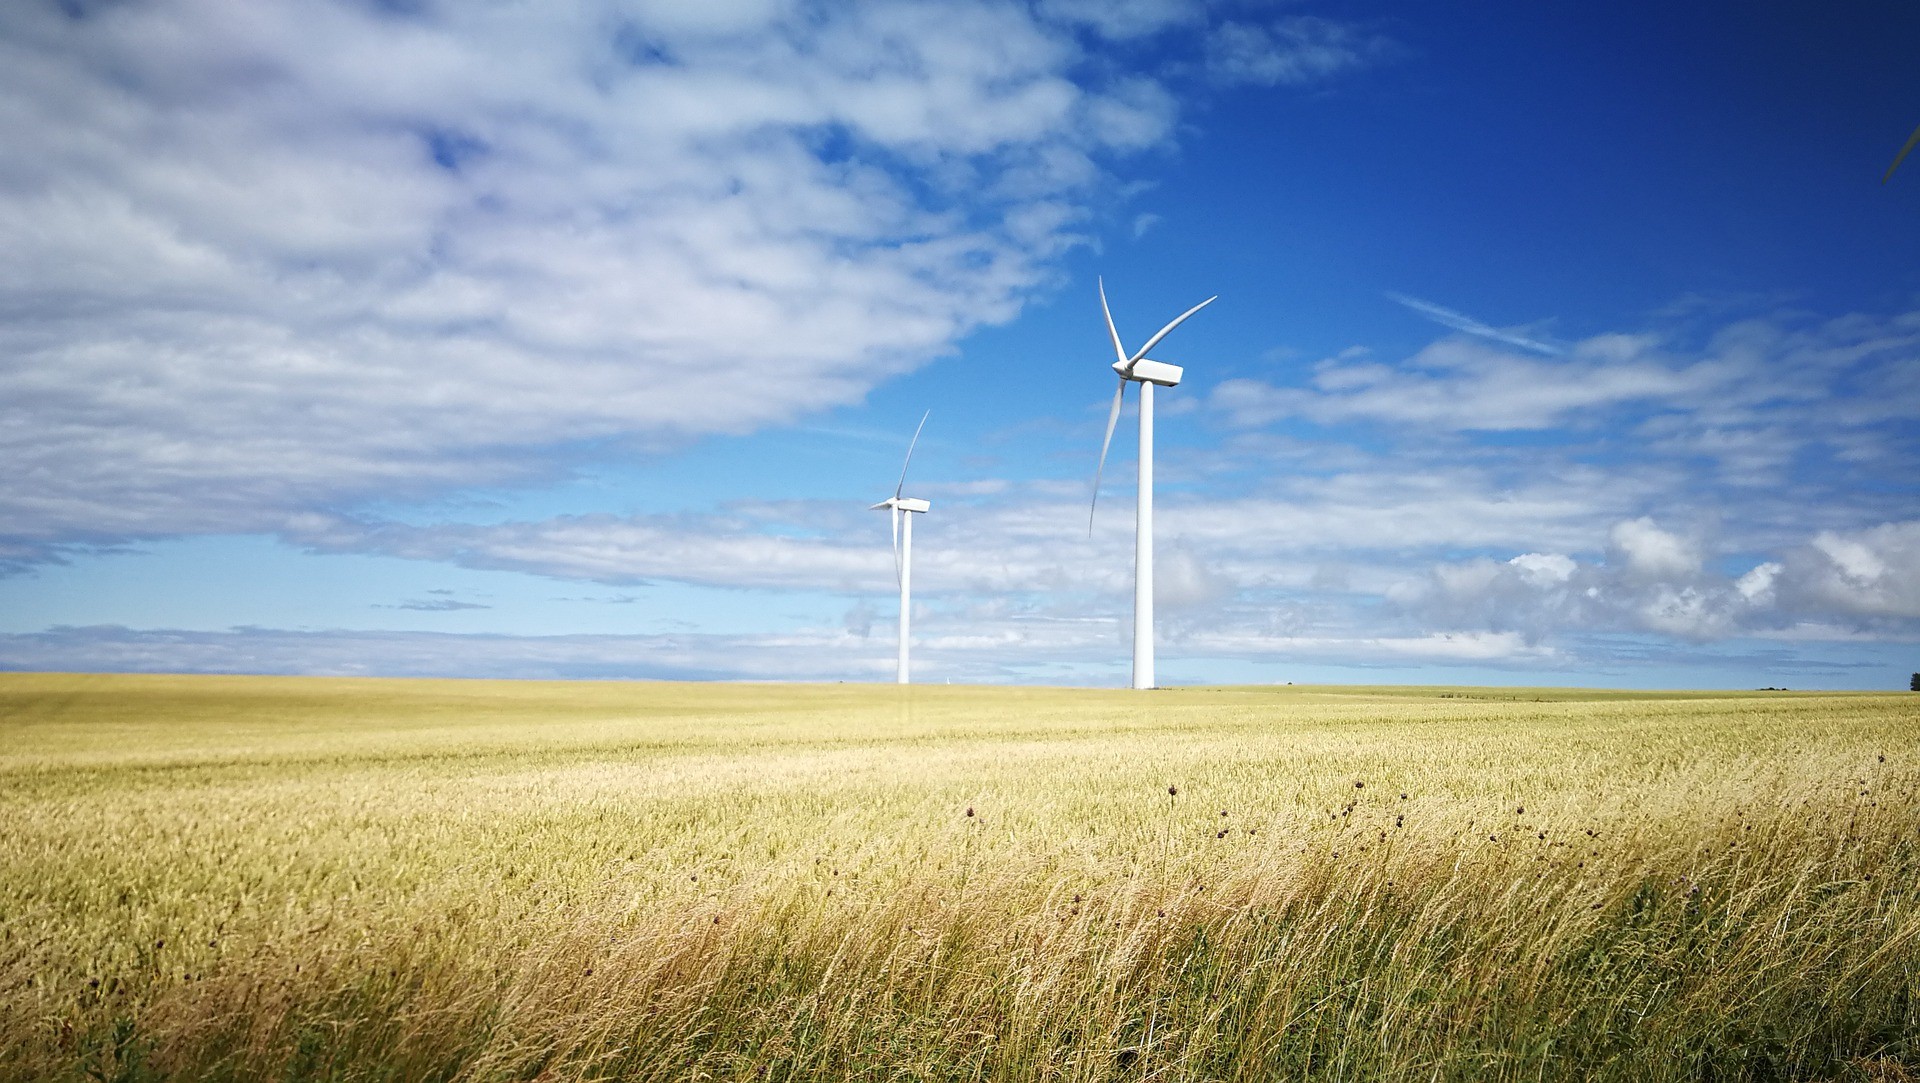 HANetf och iClima Earth meddelar att iClima Global Decarbonisation Enablers UCITS ETF (ECLM) och iClima Distributed Renewable Energy UCITS ETF (DGEN), nu klassificeras som artikel 9 -investeringar enligt den nya EU Sustainable Finance Disclosure Regulation (SFDR), som trädde i kraft i mars 2021.